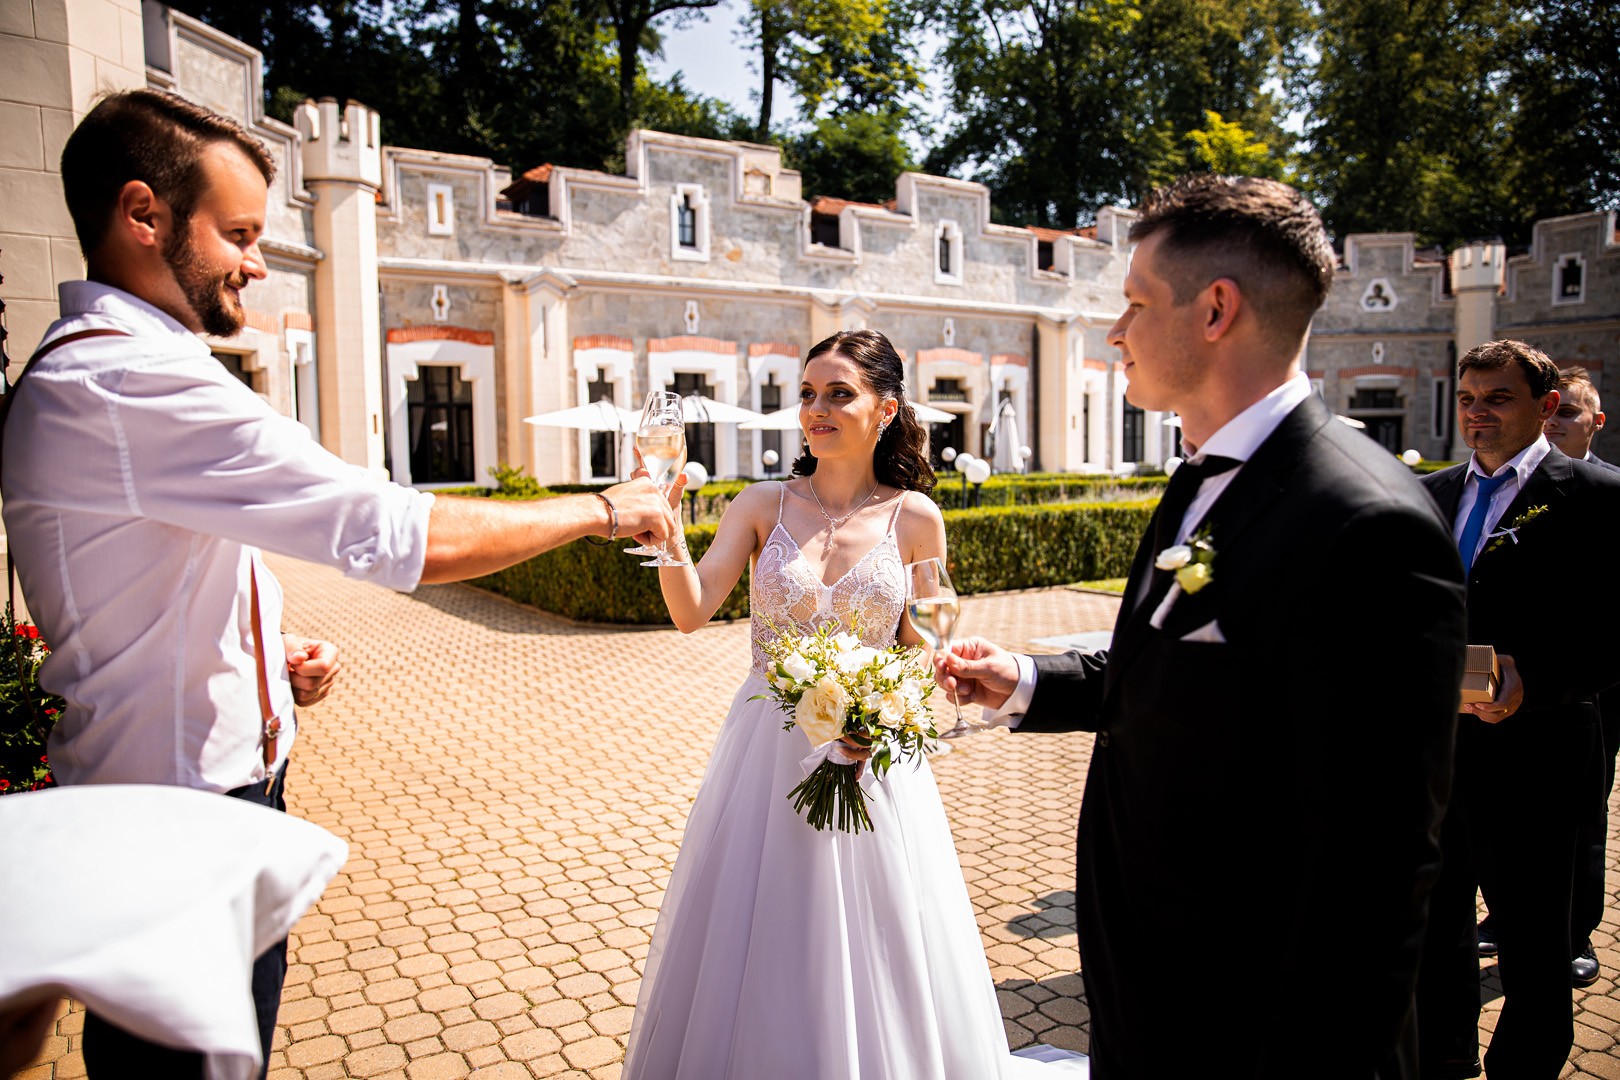 Picturesque dream wedding of Kloudy & Michal in Hluboká nad Vltavou. - 0241.jpg